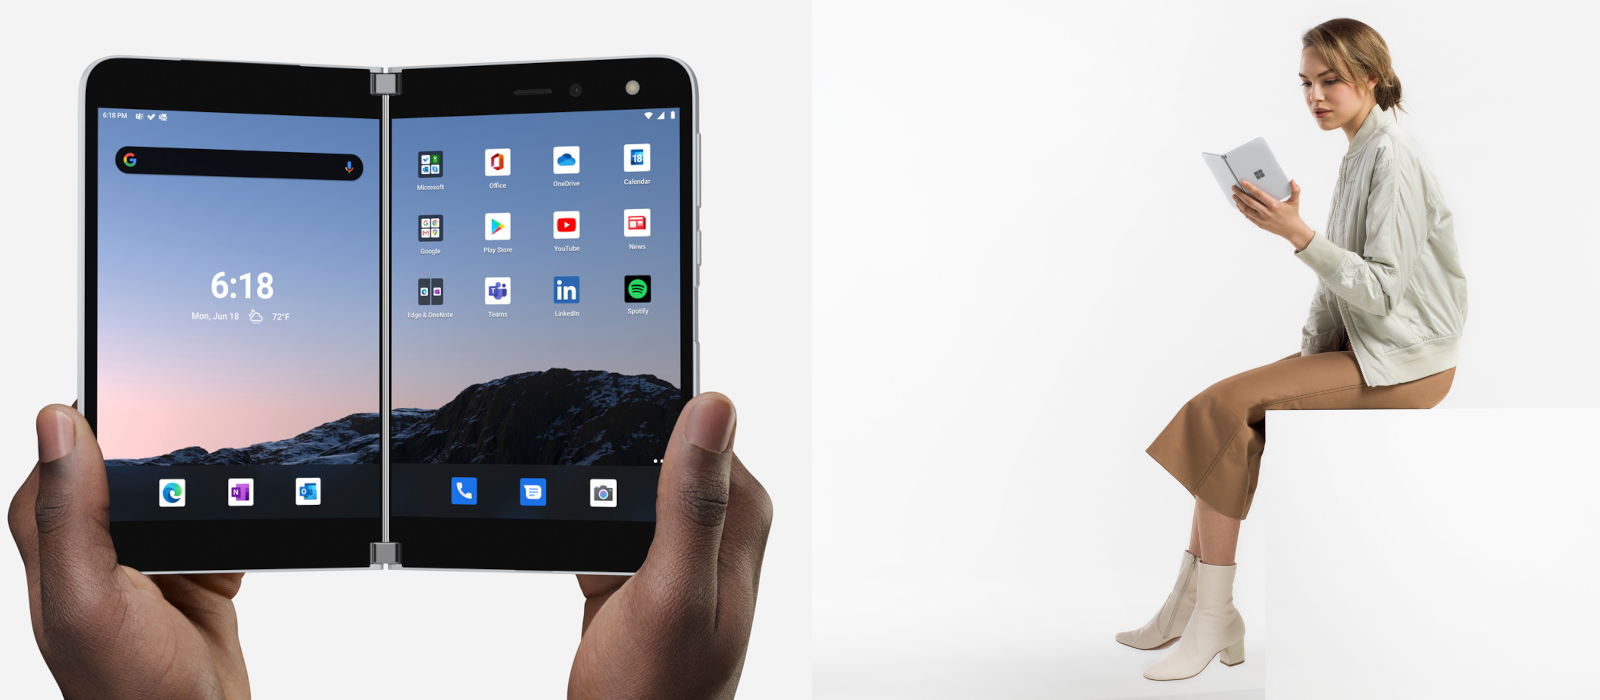 Das Bild Links zeigt das Surface Duo im aufgeklappten Modus, auf dem Bild rechts hält eine Frau das Surface Duo aufgeklappt in ihrer Hand.